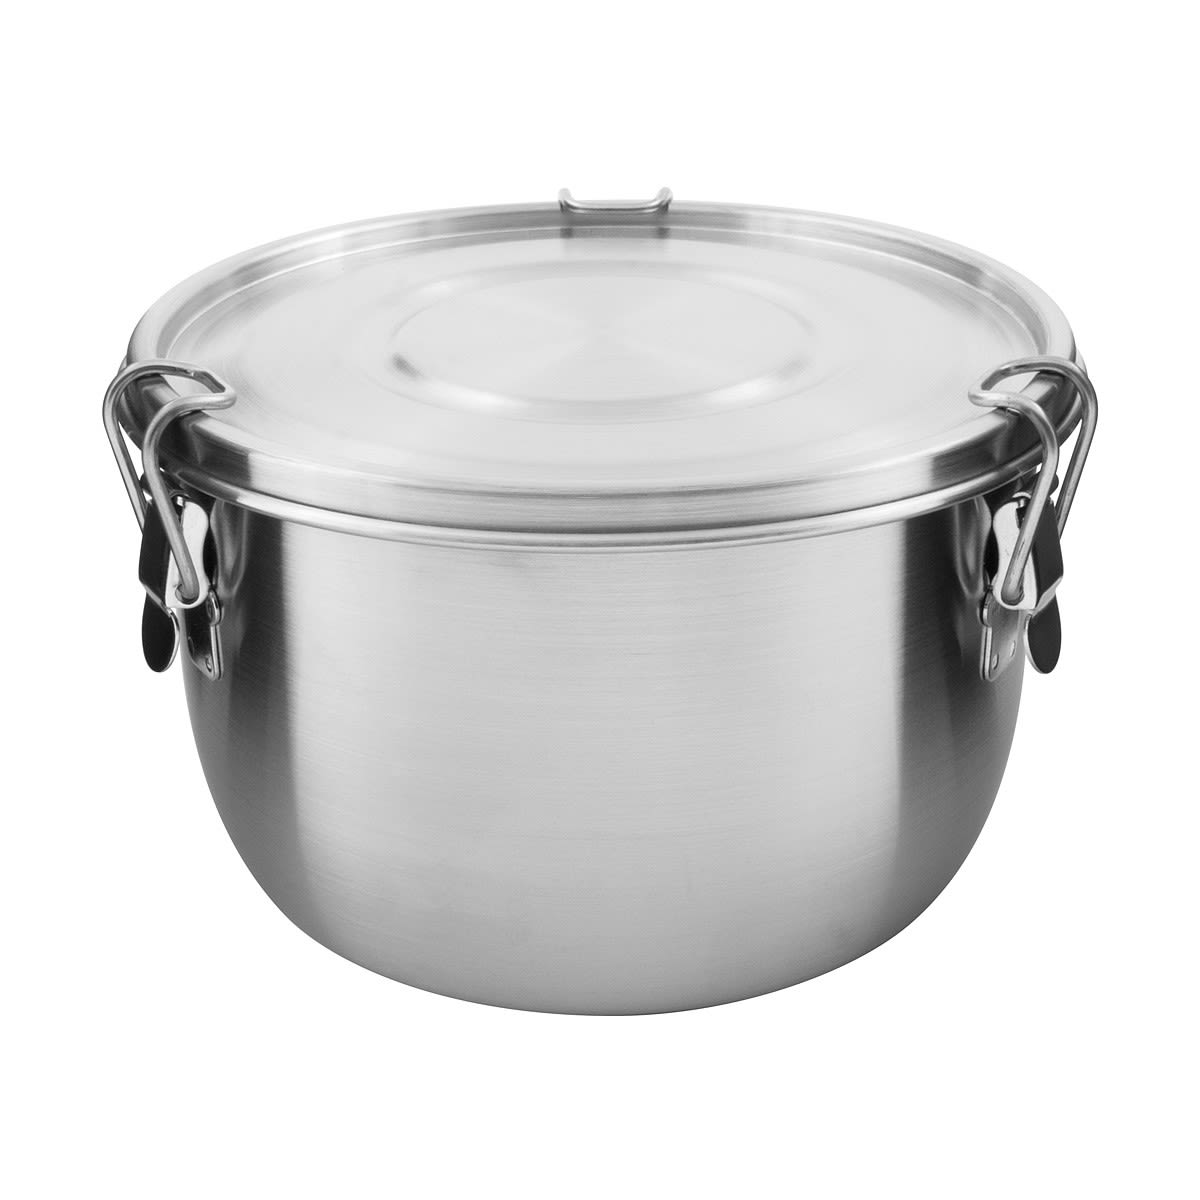 Tatonka Foodcontainer 1-0L Grau- Geschirr und Besteck- Grsse 1-0l - Farbe Silver unter Tatonka